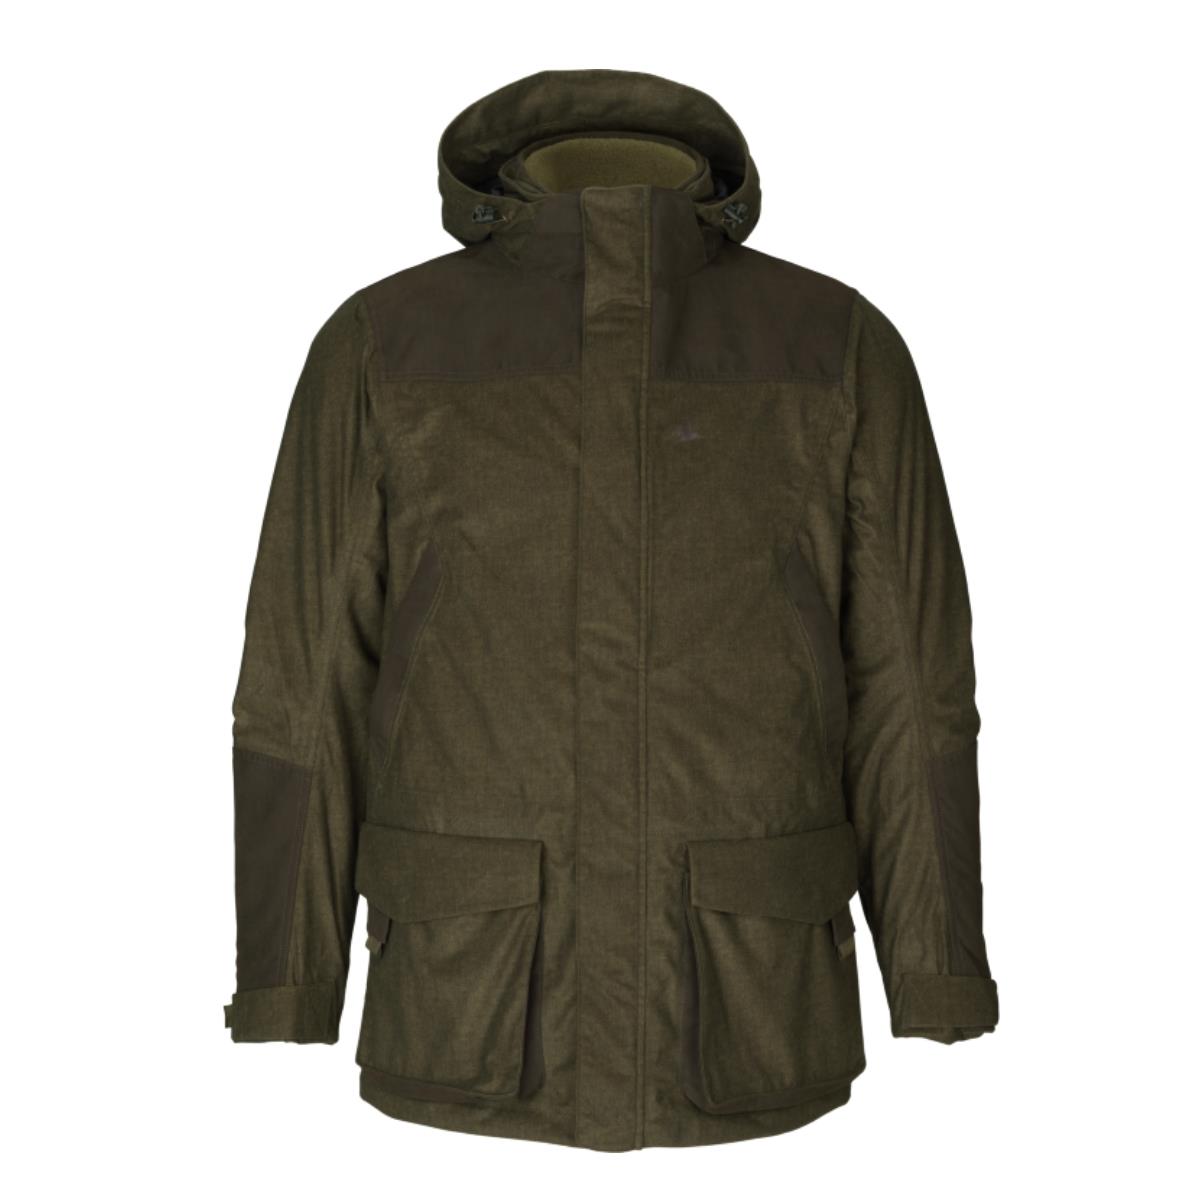 Куртка North SEELAND куртка ветровка для животных светоотражающая xs дс 18 20 ош 22 24 ог 29 30 см оранжевая 73319